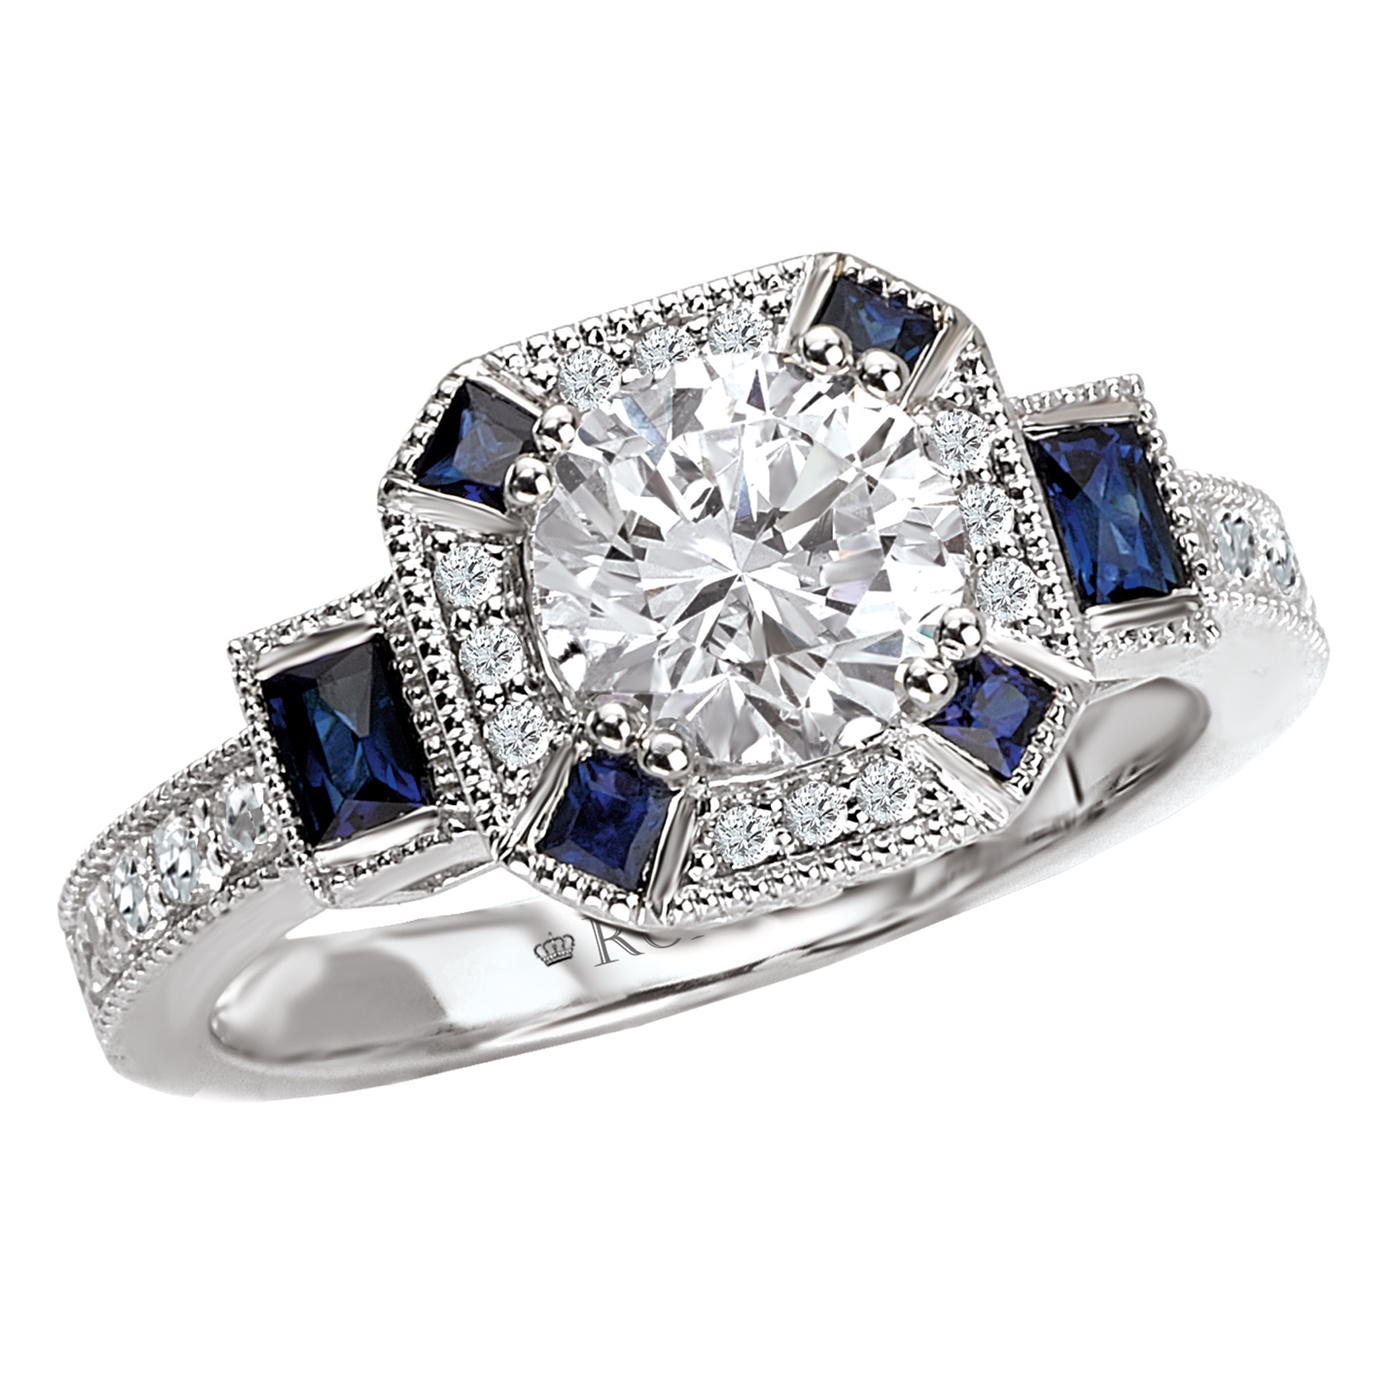 Sapphire está bem para um anel de noivado? – swaymachinery.com